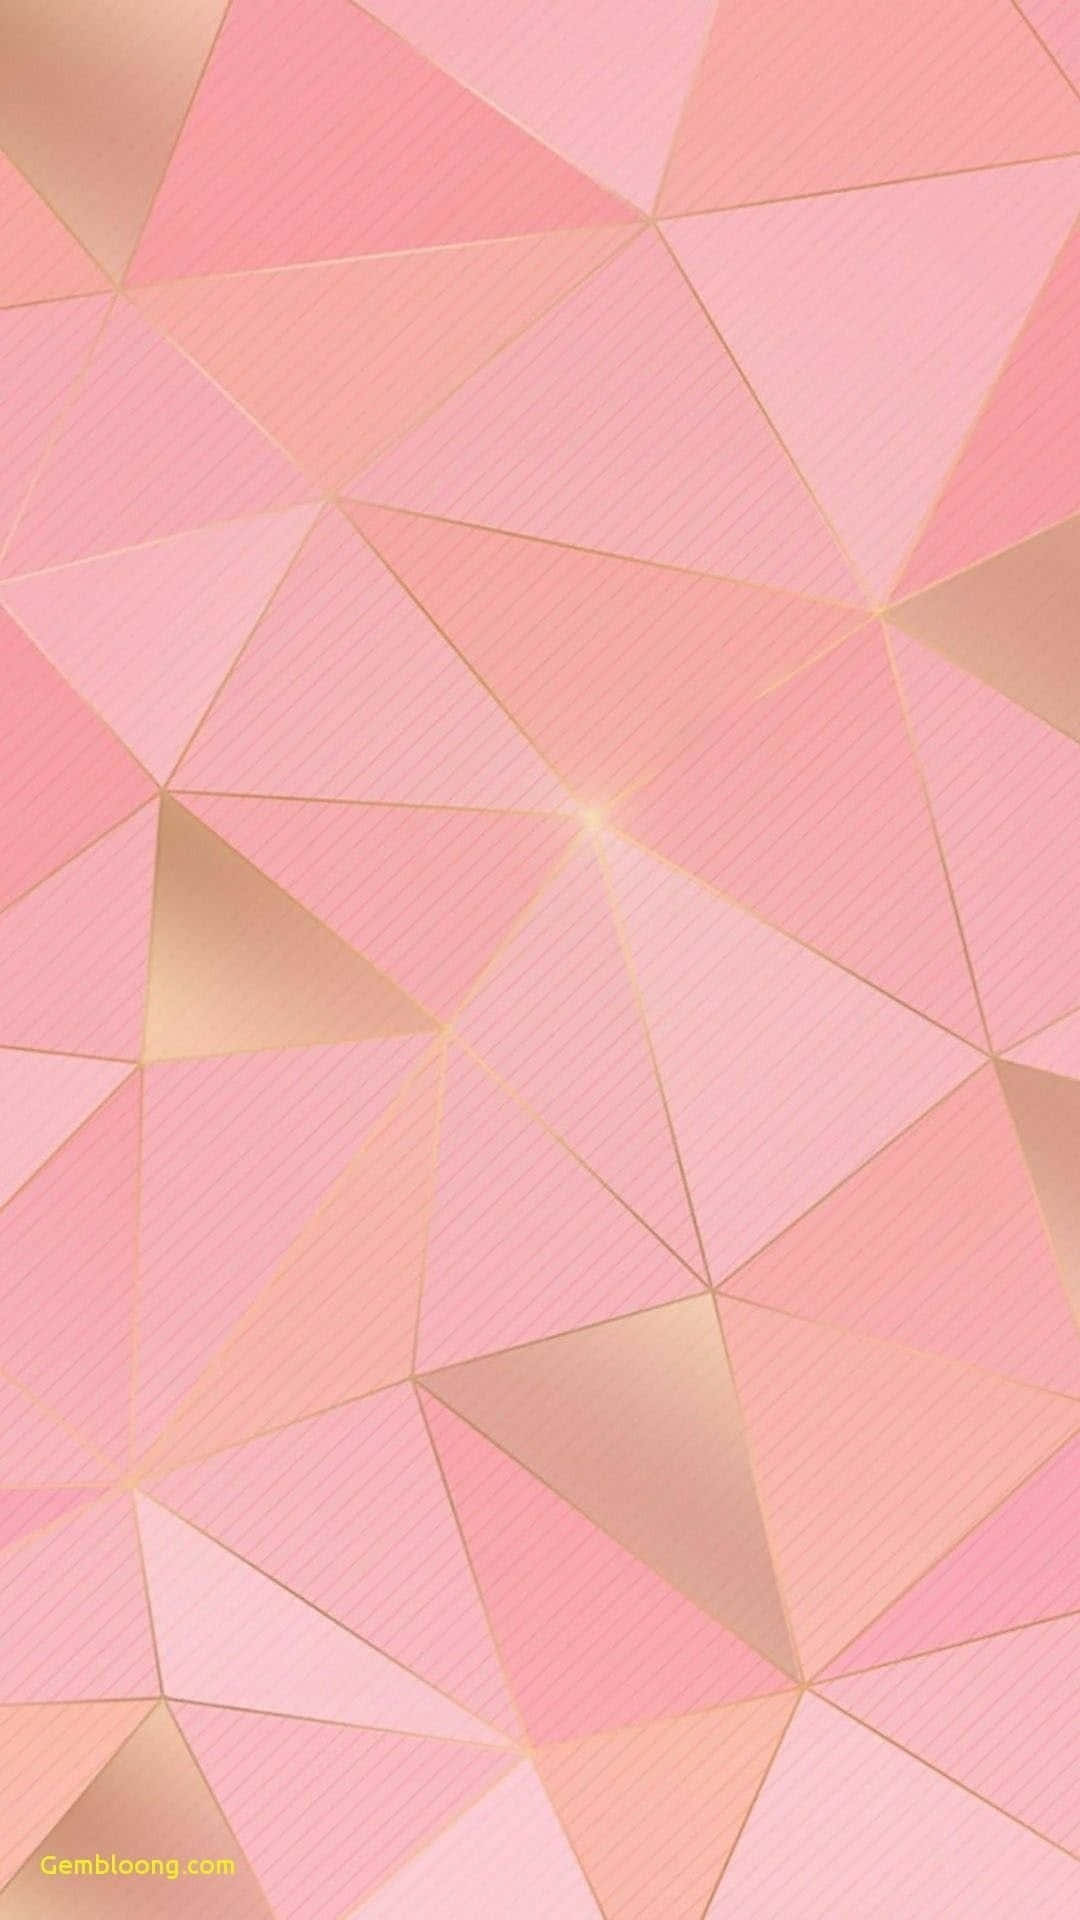 Wallpaper!uppskatta Skönheten I En Ljusrosa Iphone-bakgrundsbild! Wallpaper